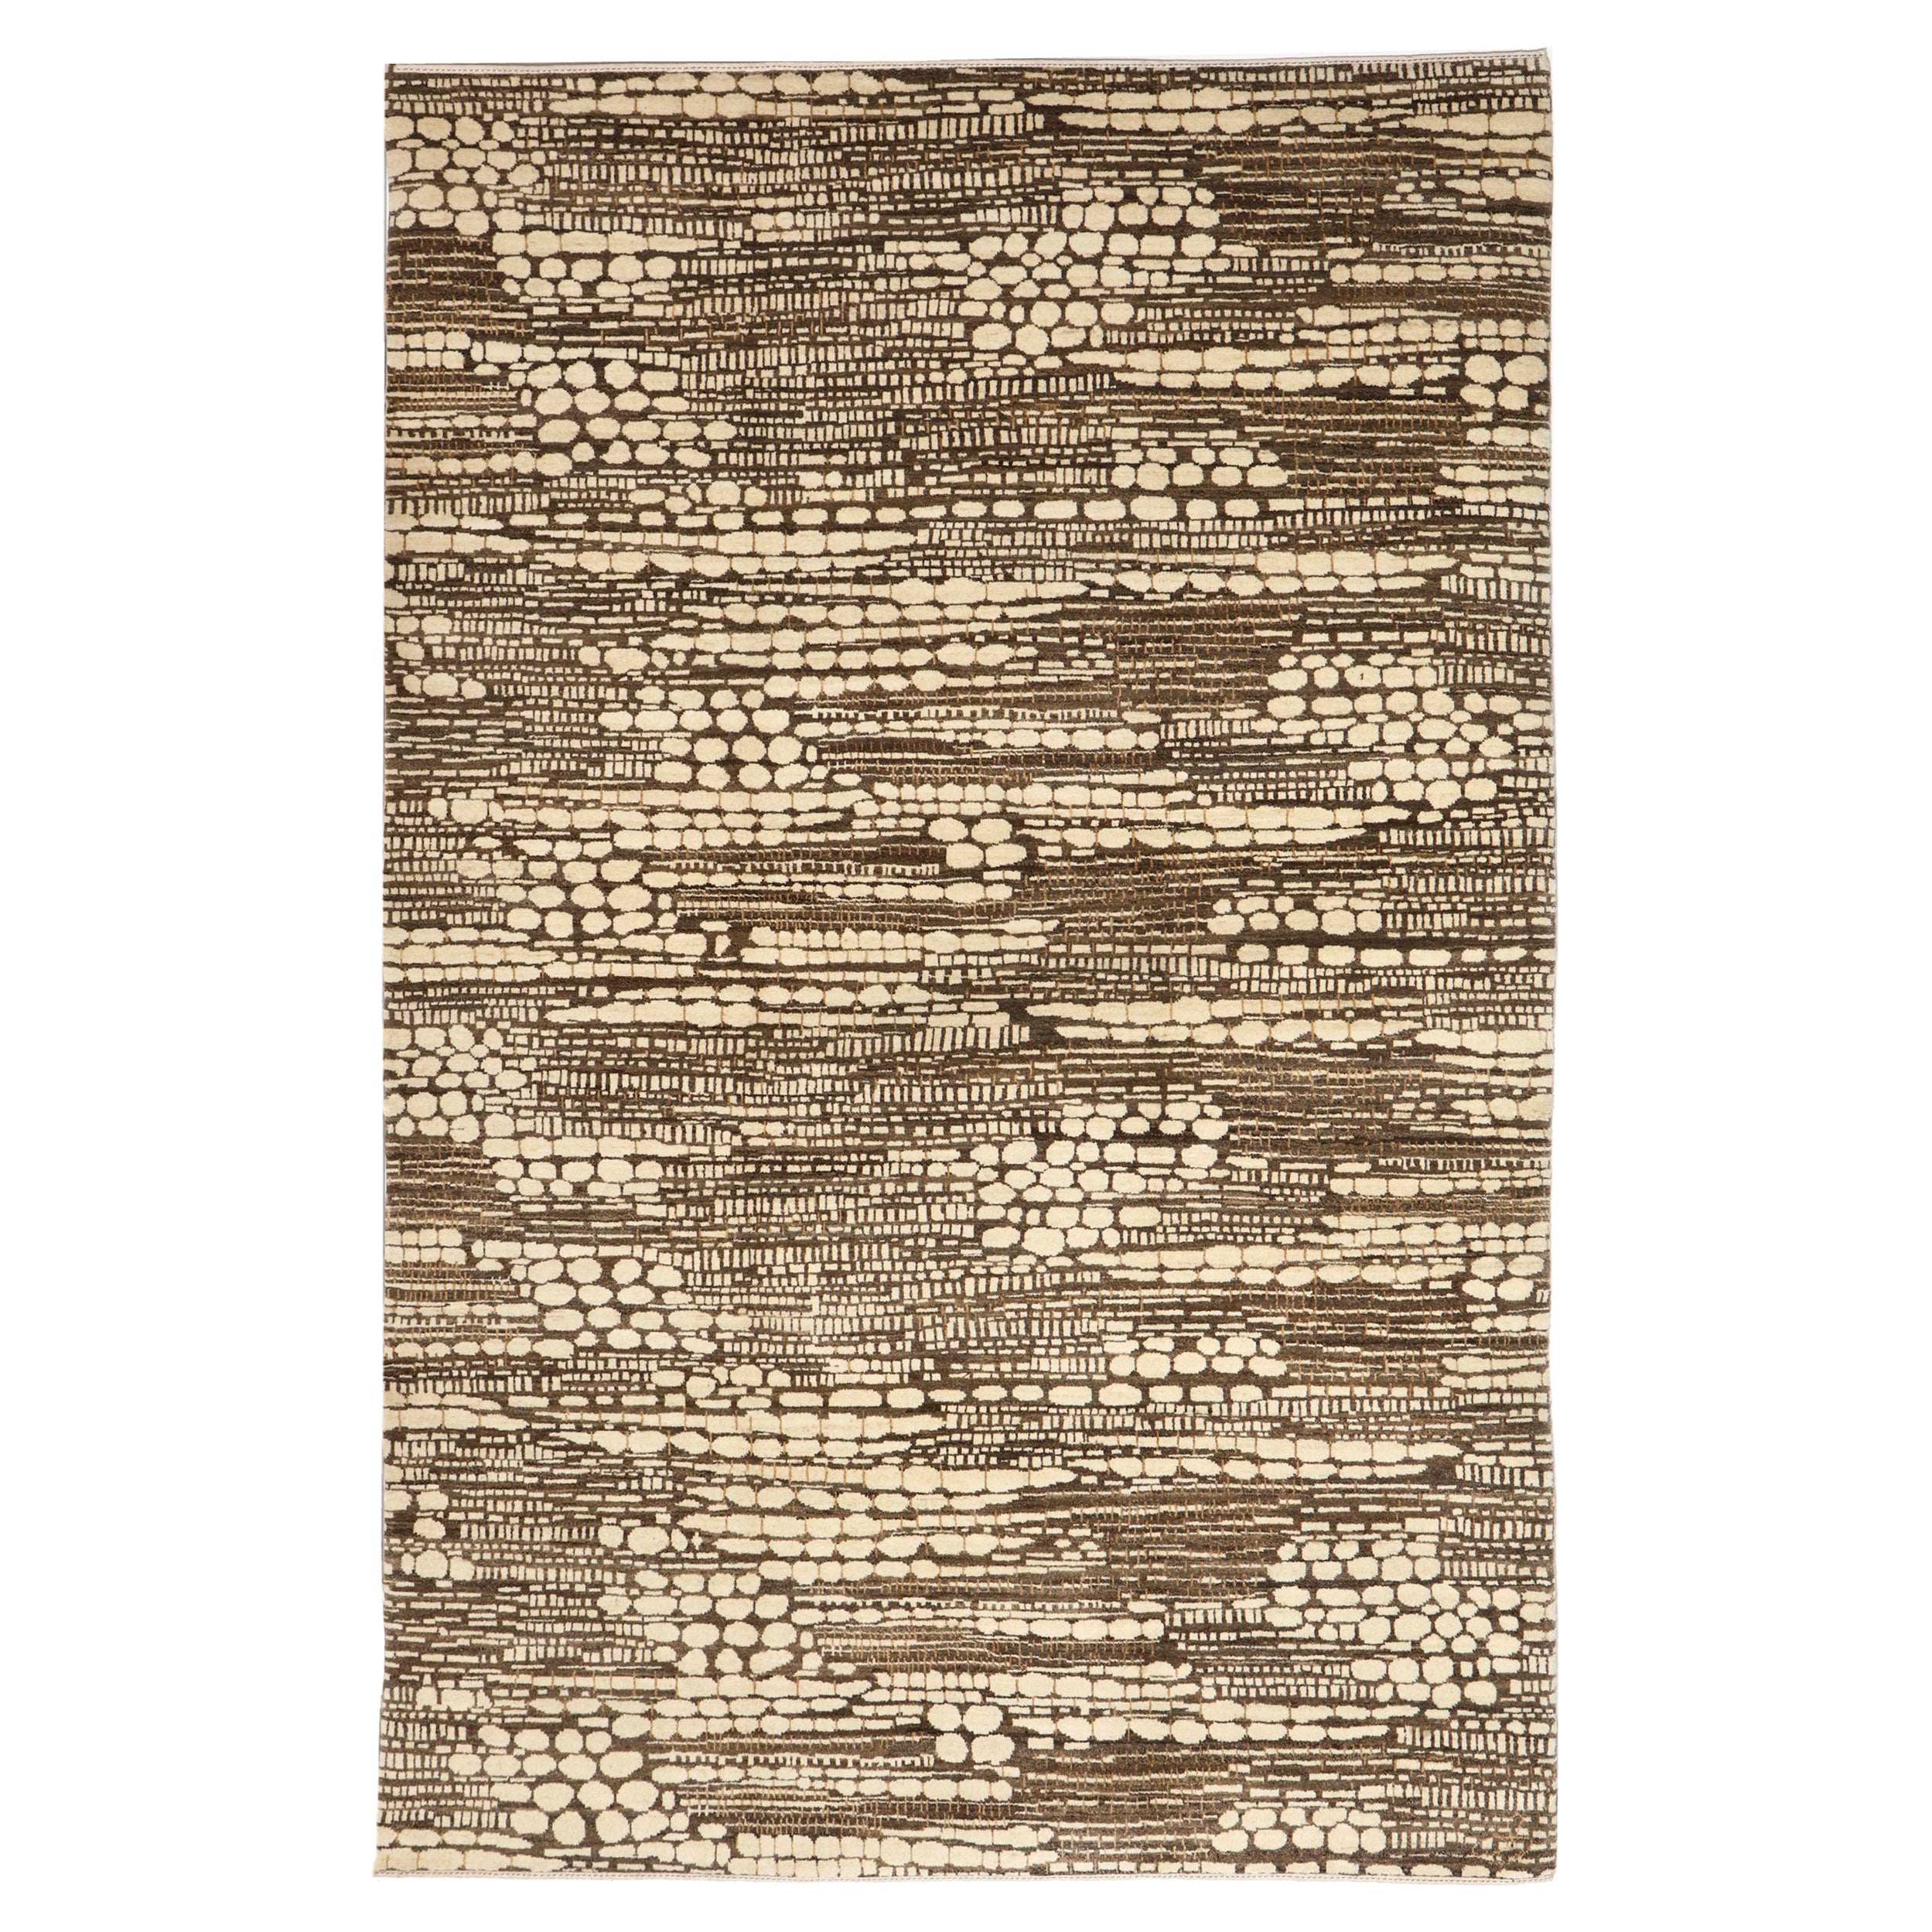 Orley Shabahang “Riverbed” Contemporary Persian Rug, 6’ x 9’